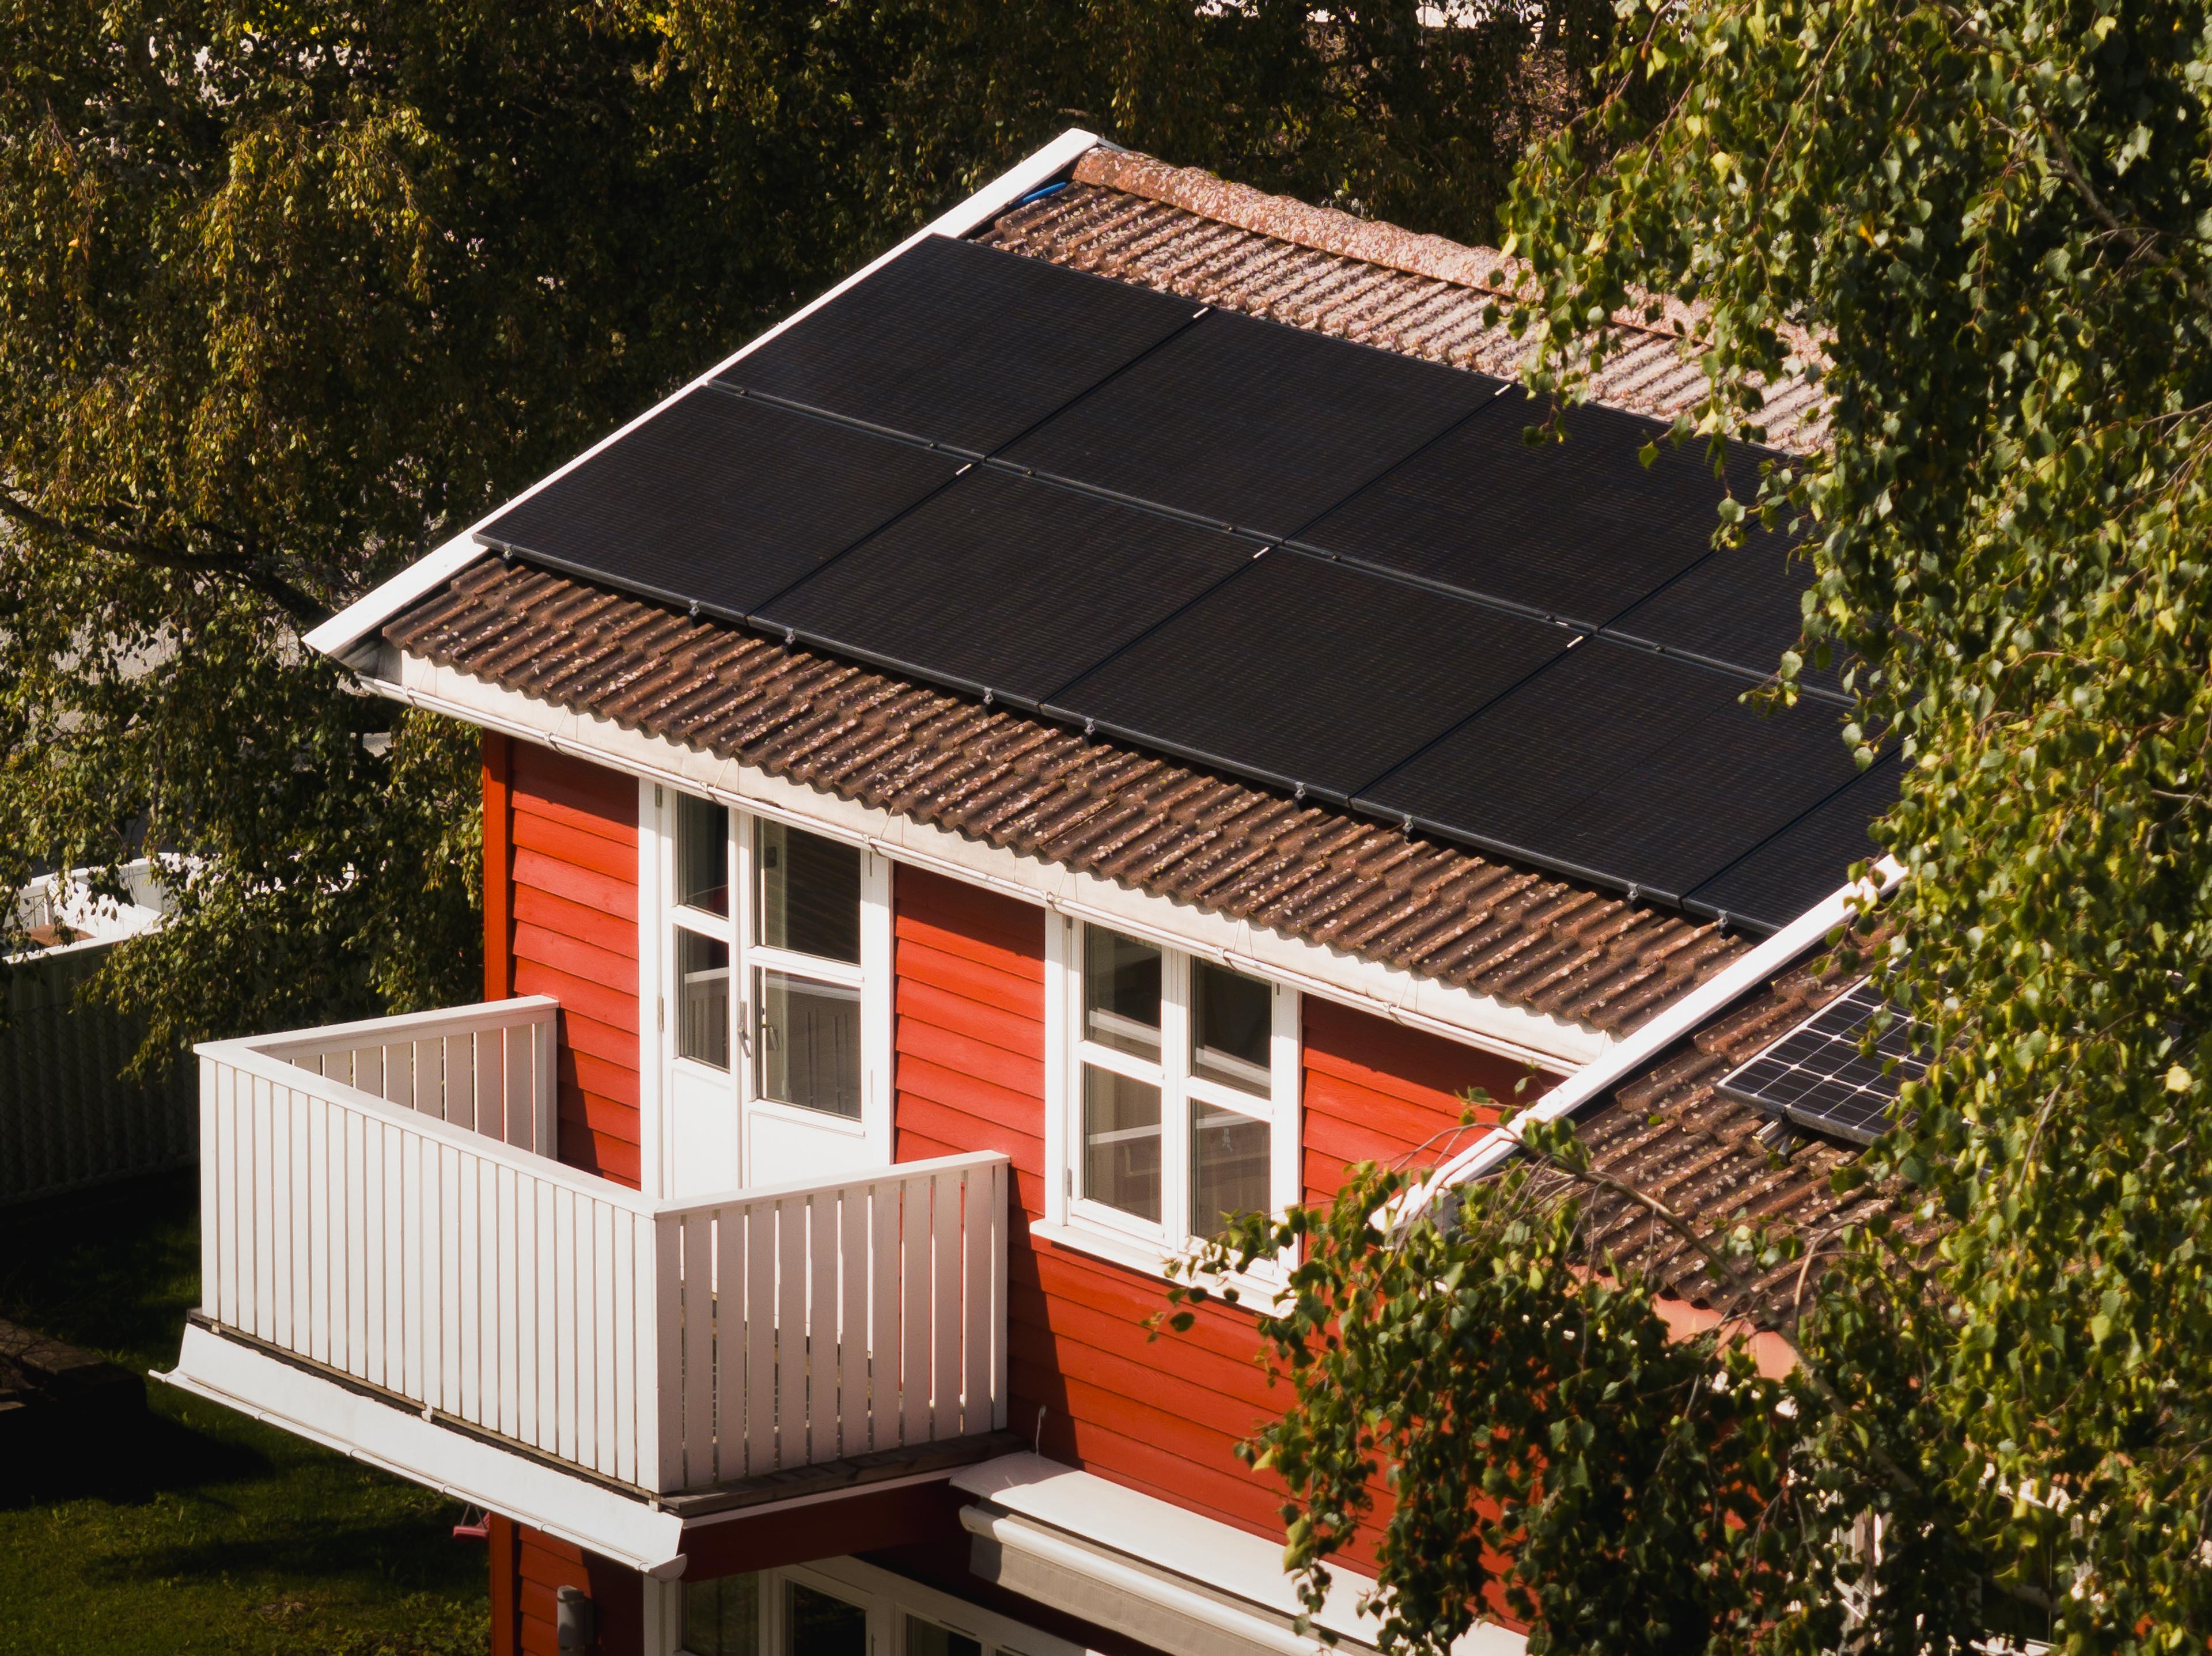 rødt hus med solcellepaneler på taket